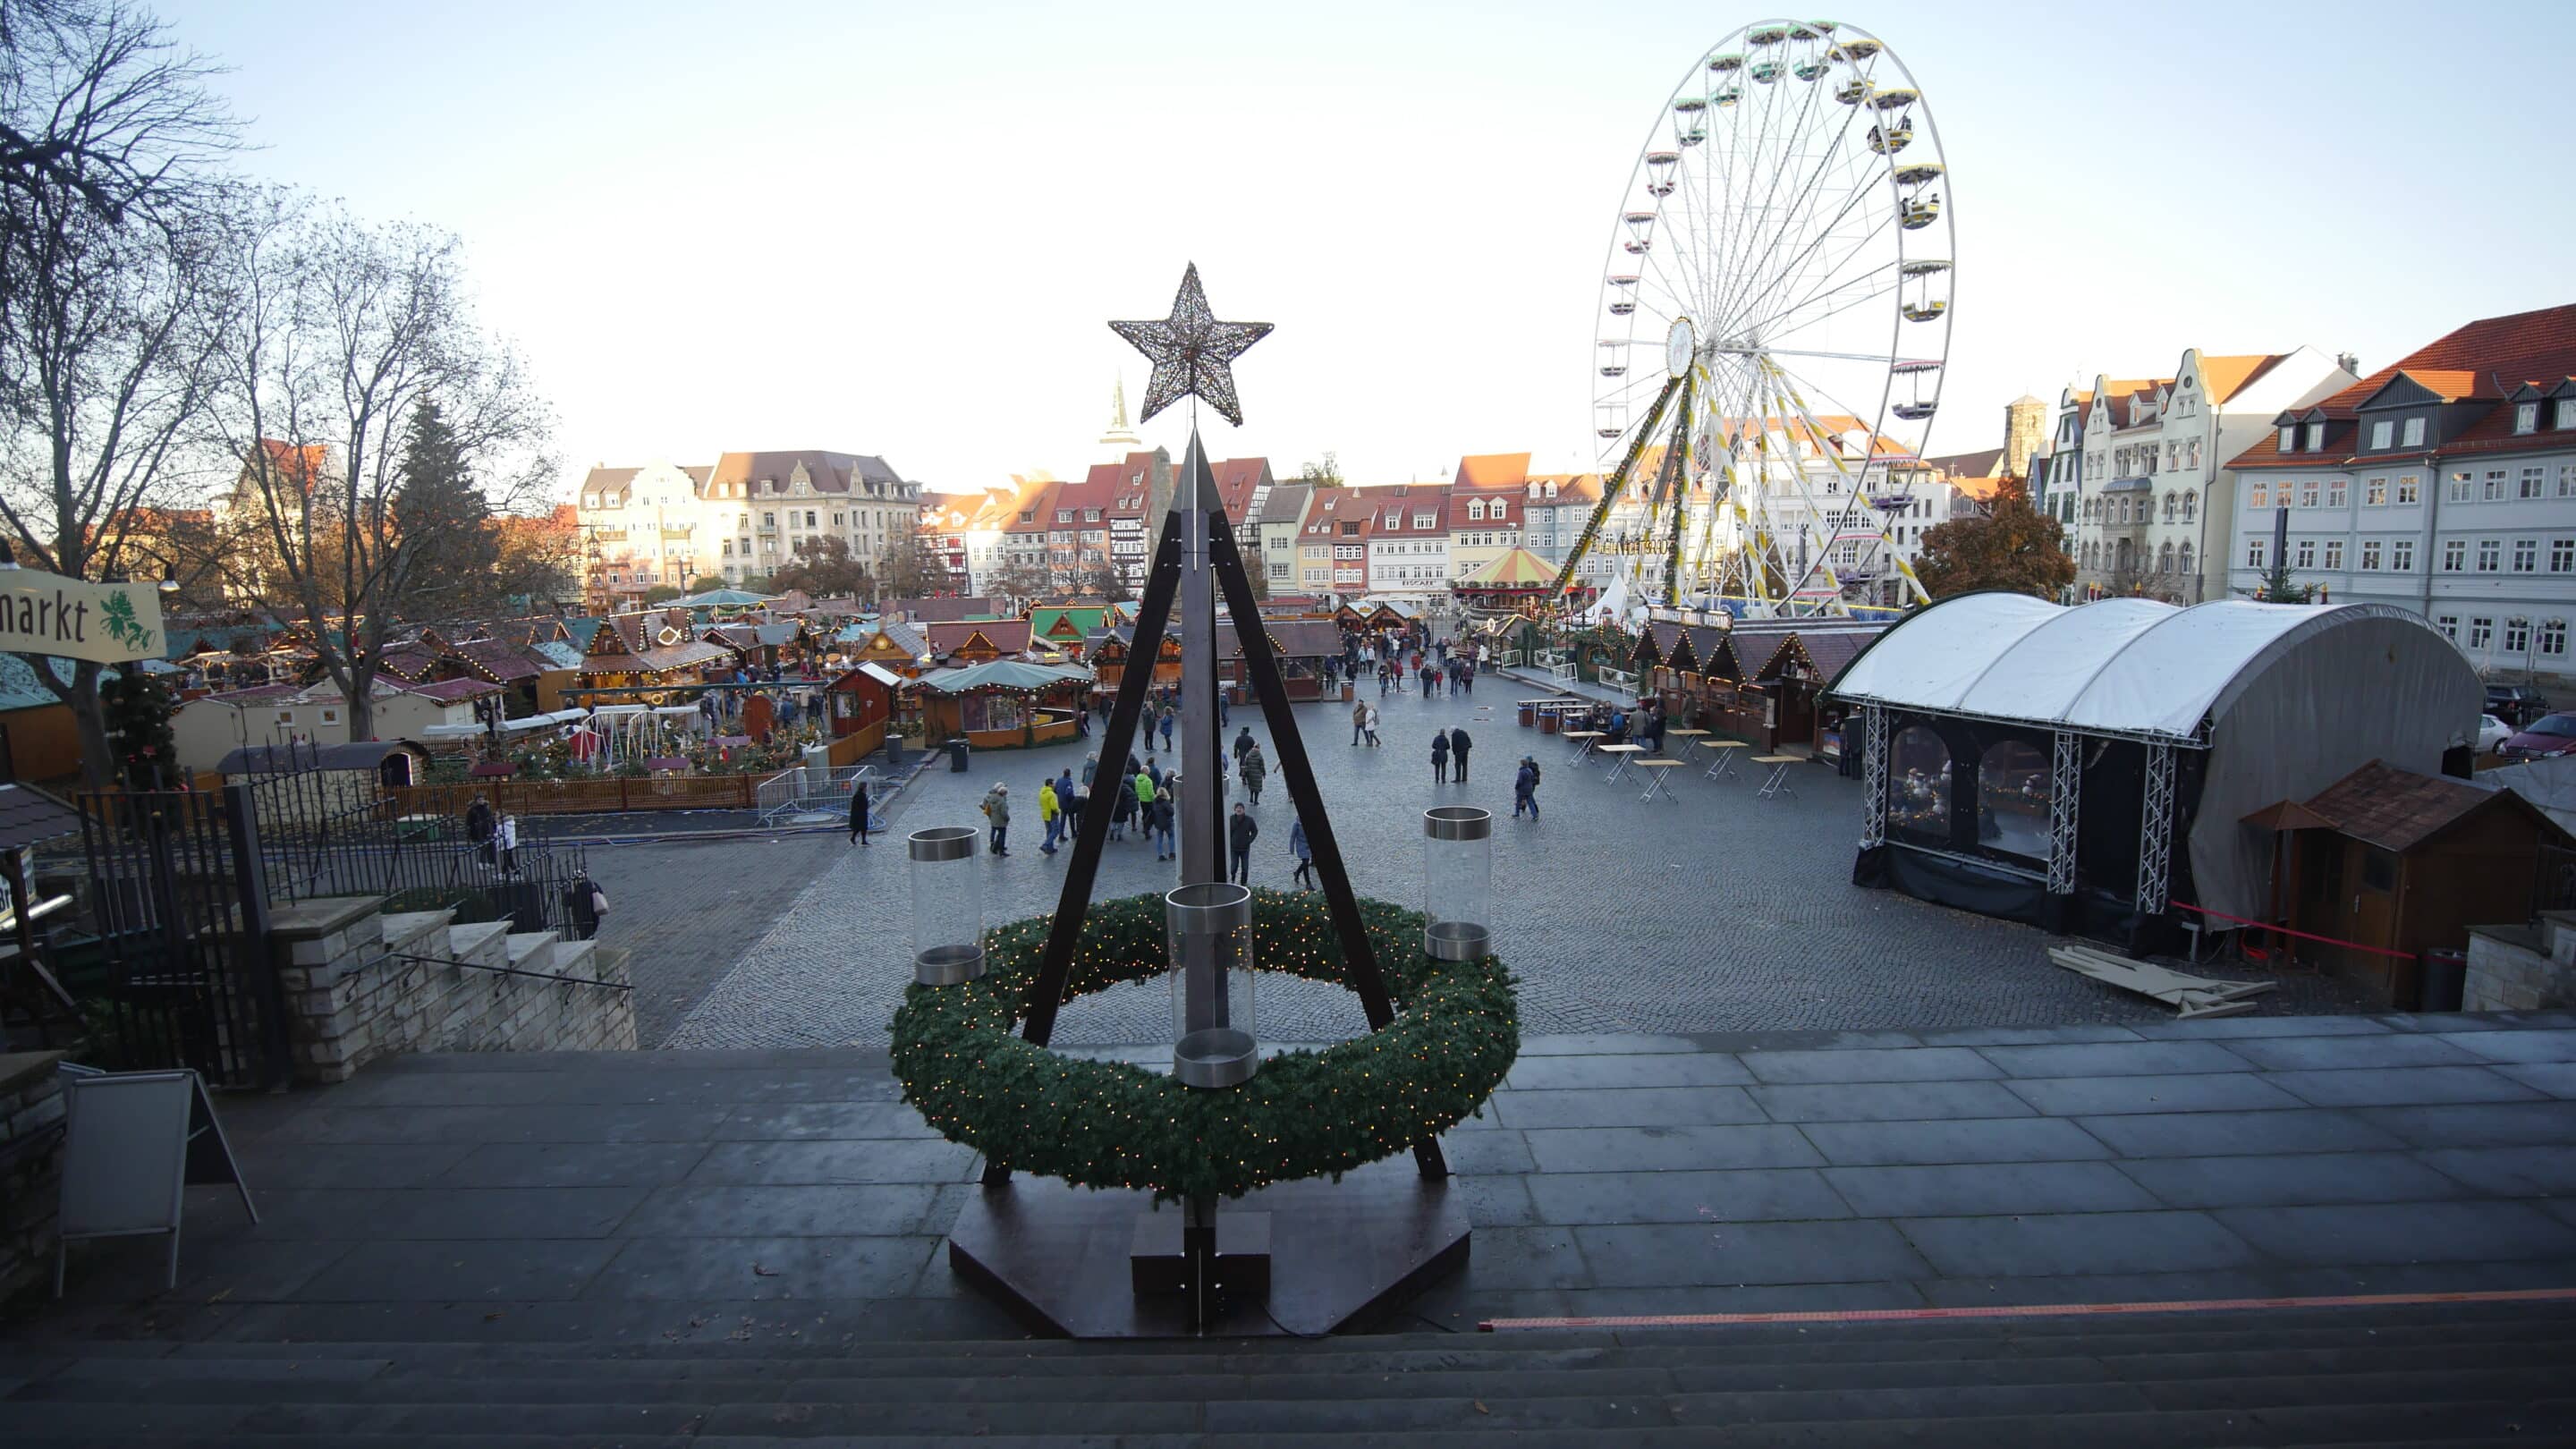 Adventskranz auf dem Weihnachtsmarkt. Domplatz Erfurt. scaled_erfurt